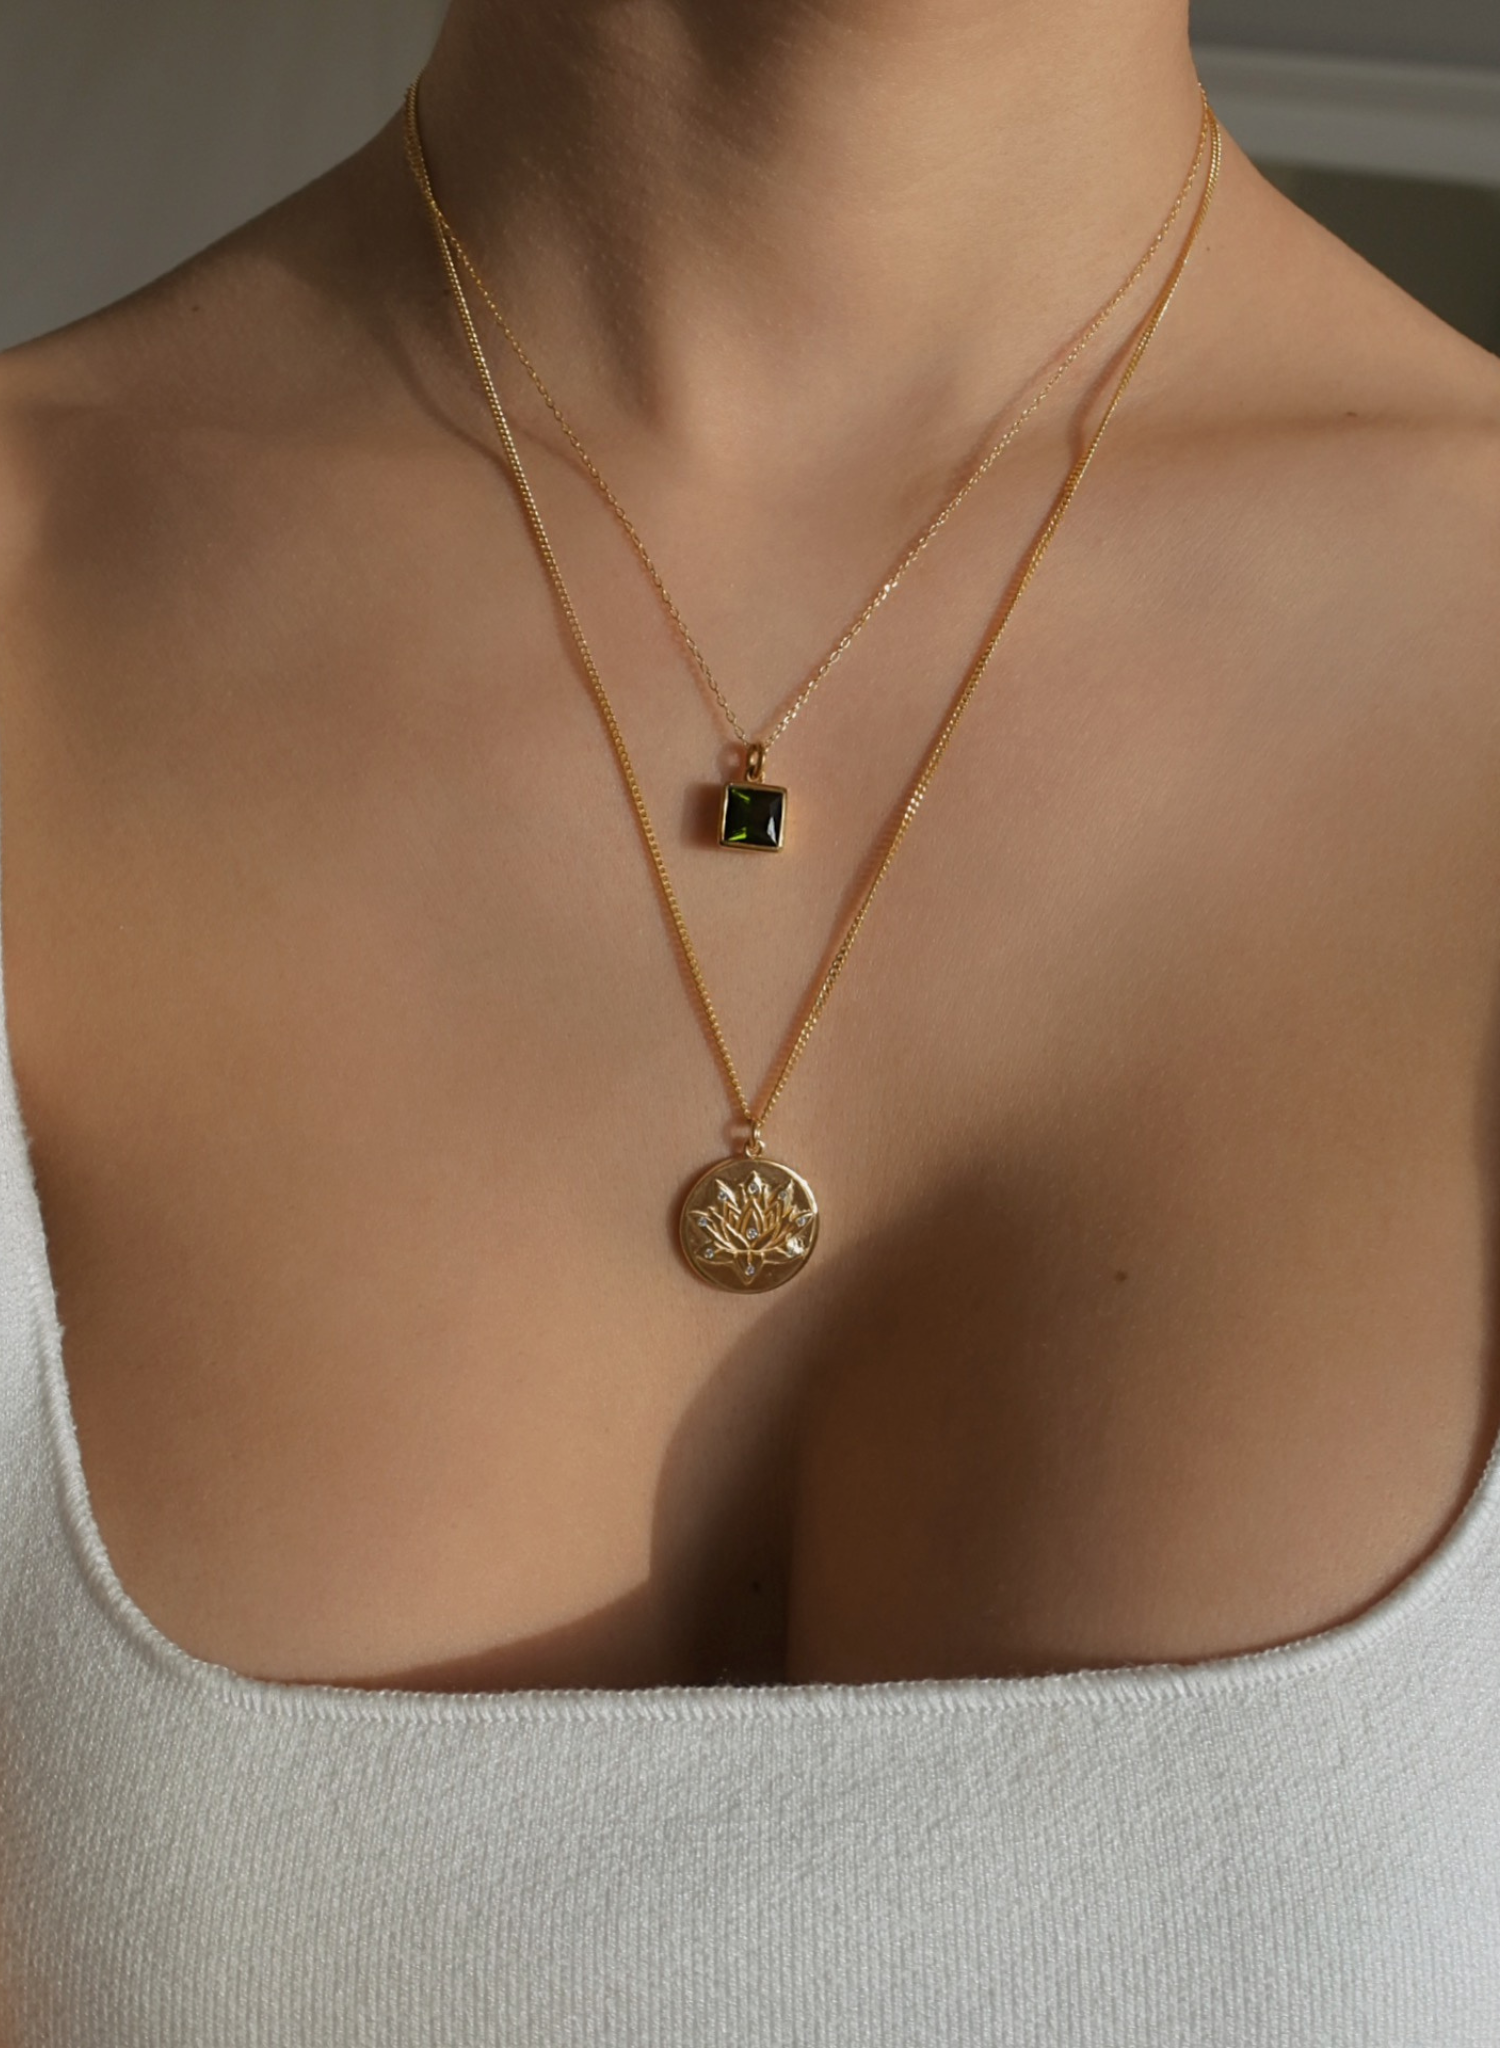 Notre collier Fleur de Lotus porté près du coeur, reflète l’amour inconditionnel qui émane lorsque l’on s’ouvre à la vie. Il est l’expression même de la beauté qui réside en chacun de nous.